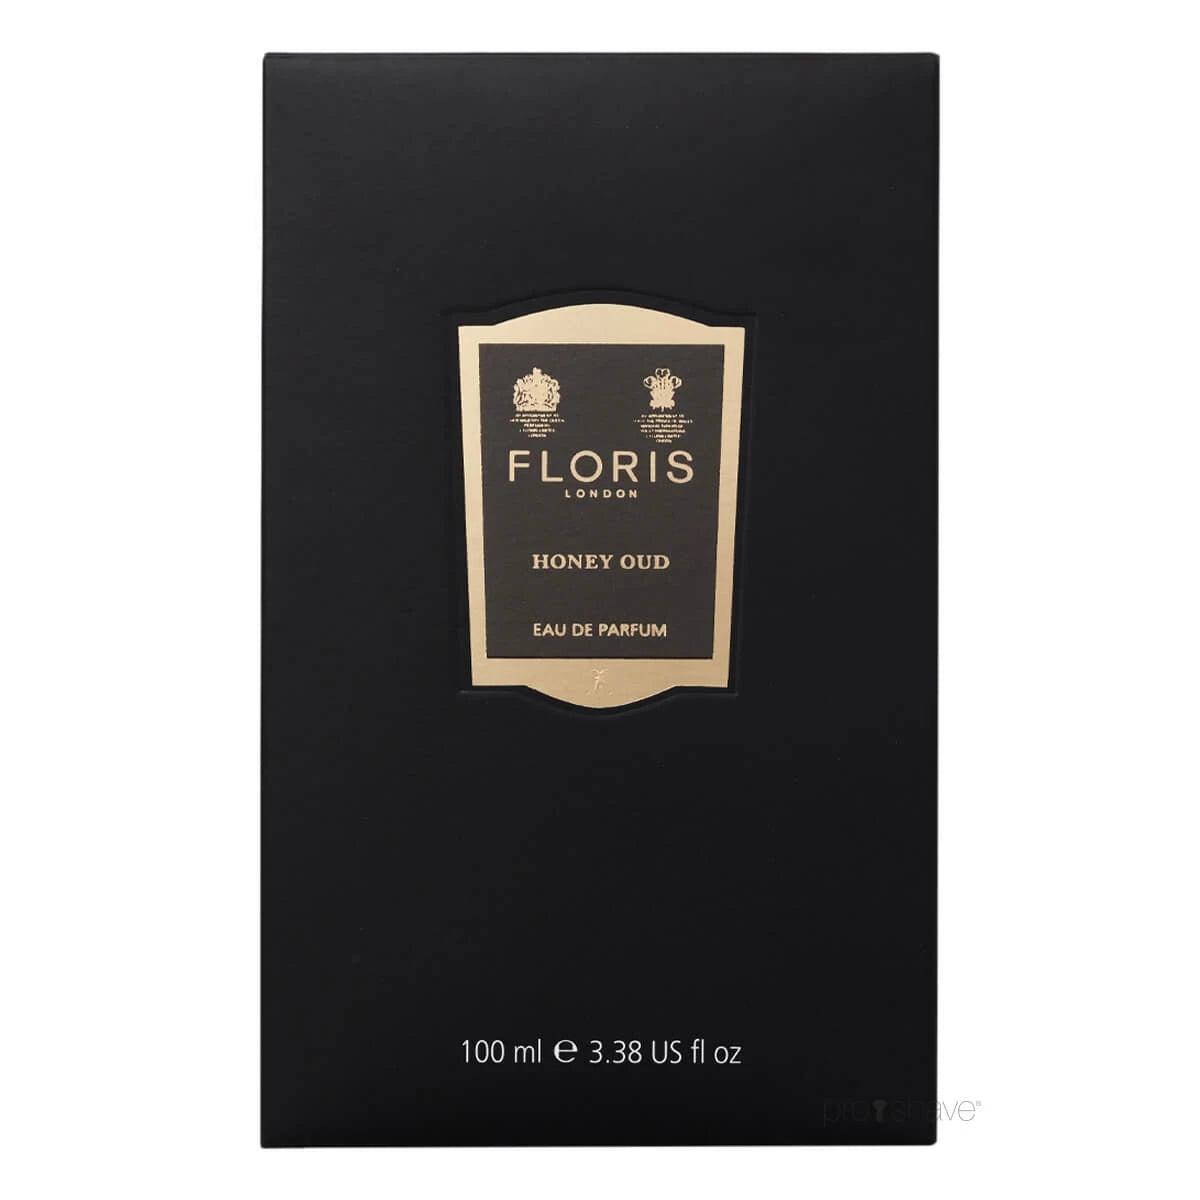 Floris Honey Oud, Eau de Parfum | Parfyme | Floris London | JK SHOP | JK Barber og herre frisør | Lavepriser | Best